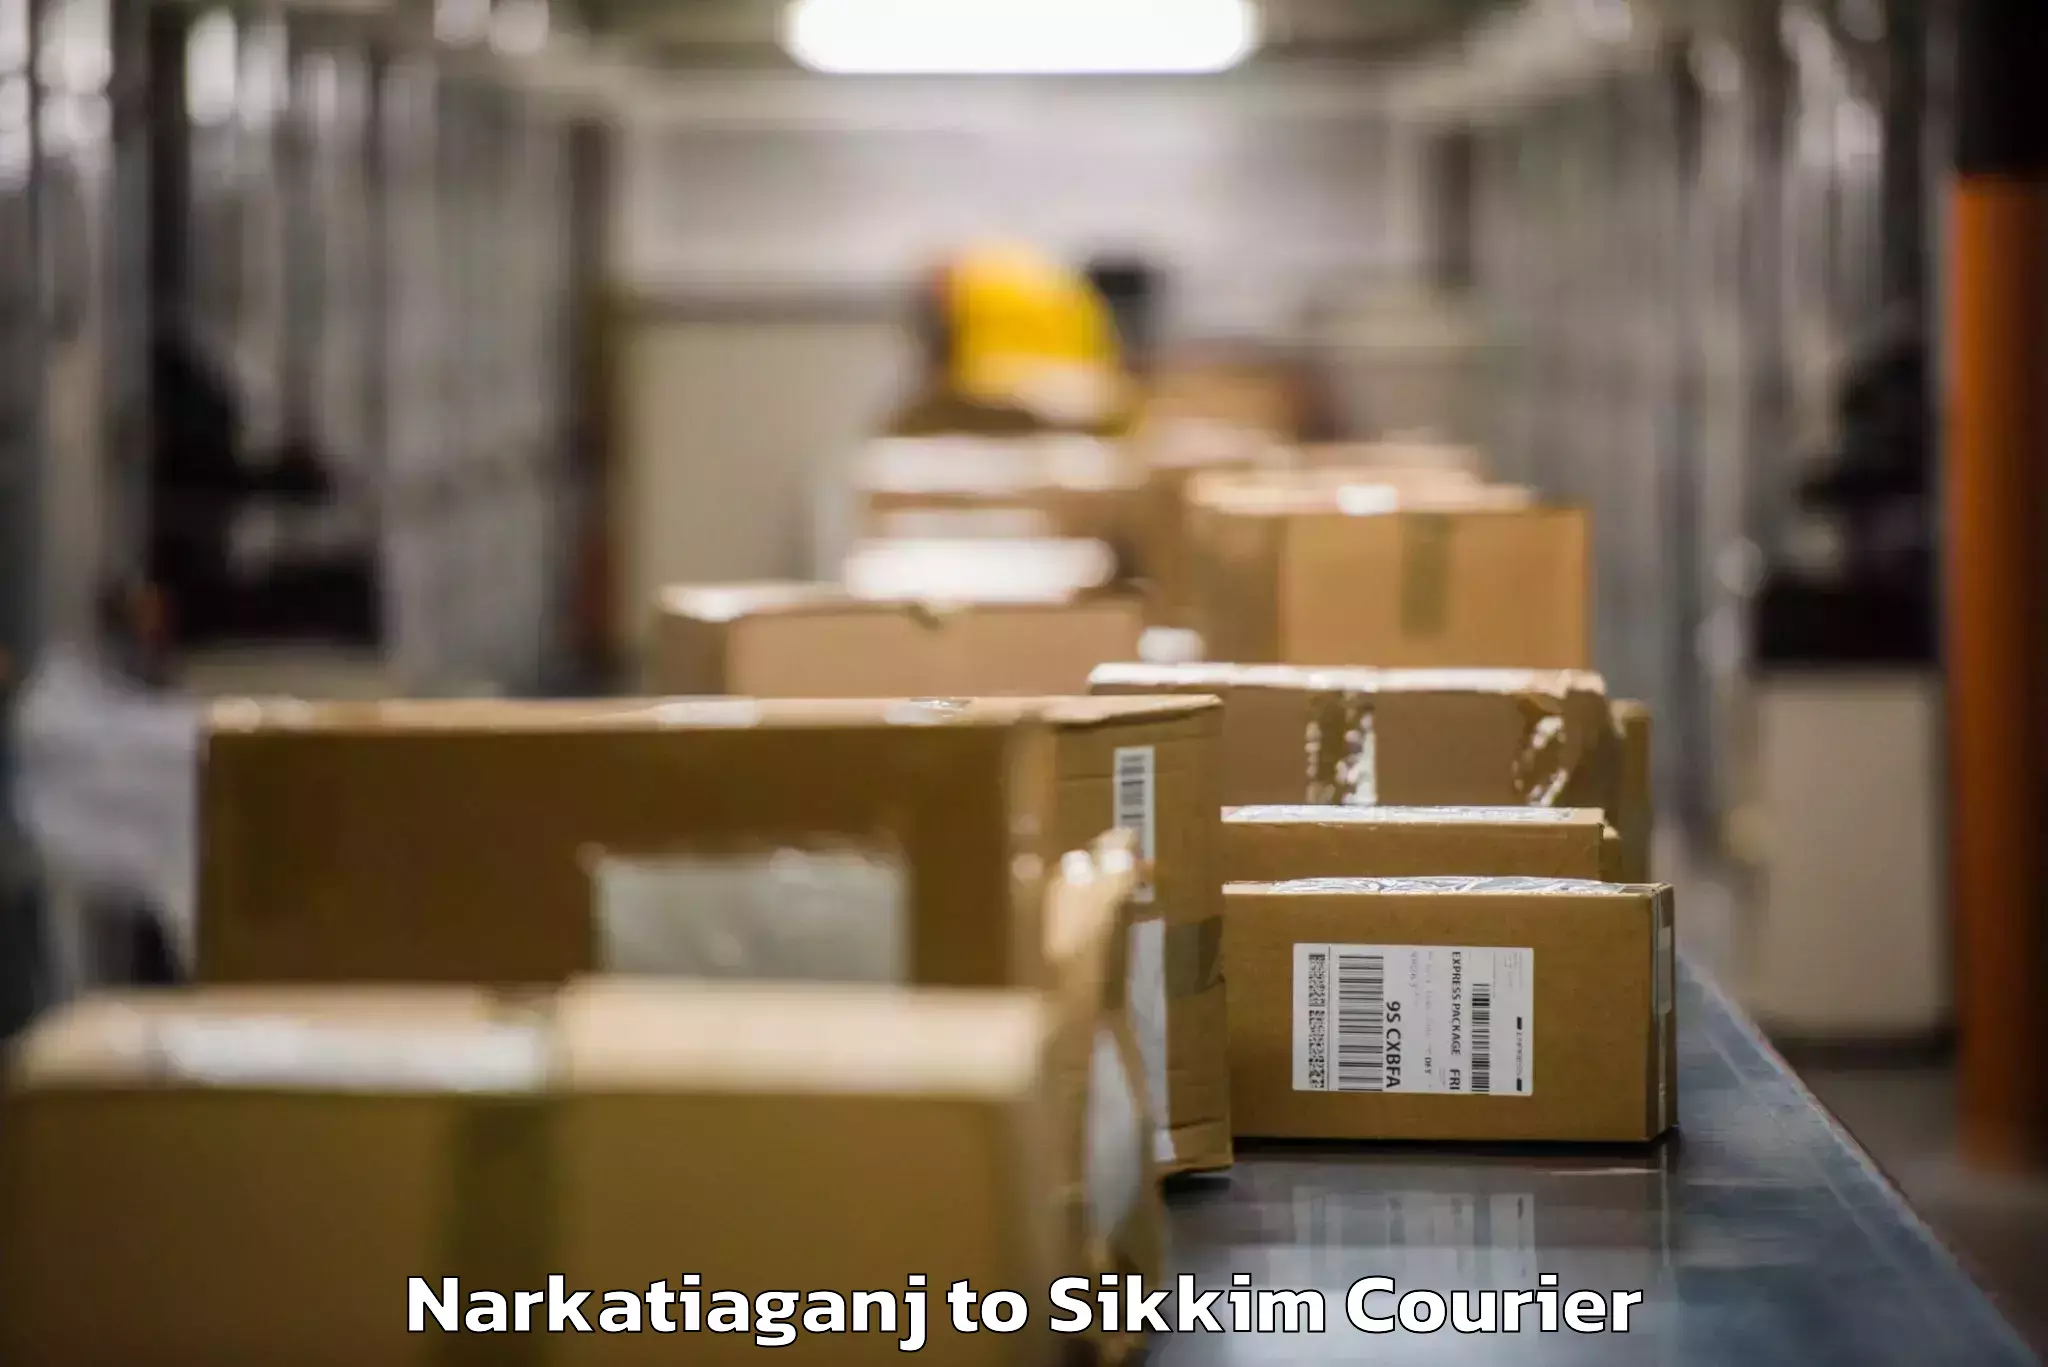 Baggage delivery technology Narkatiaganj to Mangan